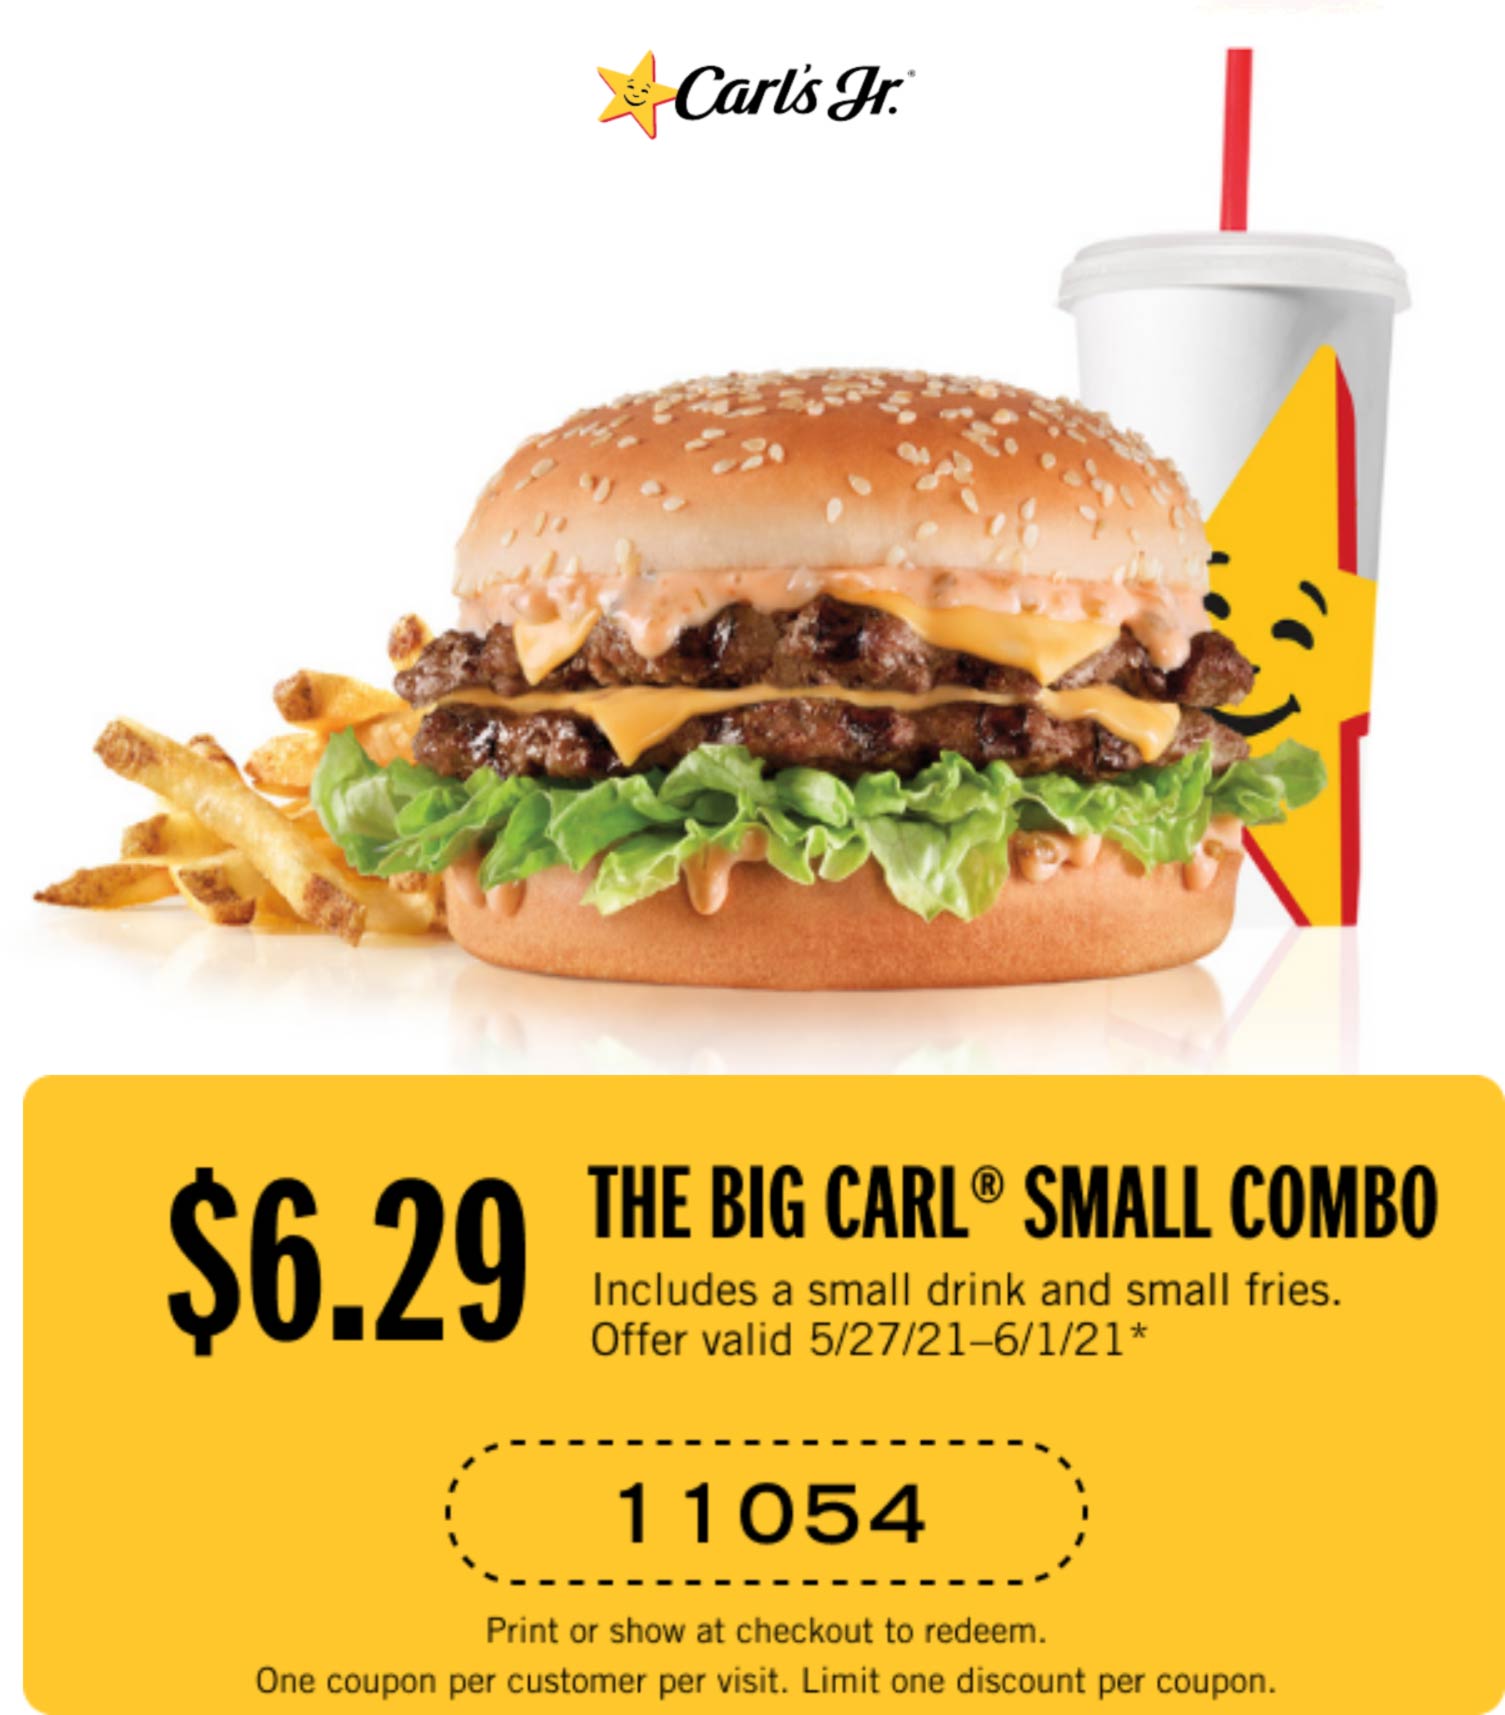 Carls Jr restaurants Coupon  Double cheeseburger Big Carl combo meal = $6.29 at Carls Jr #carlsjr 